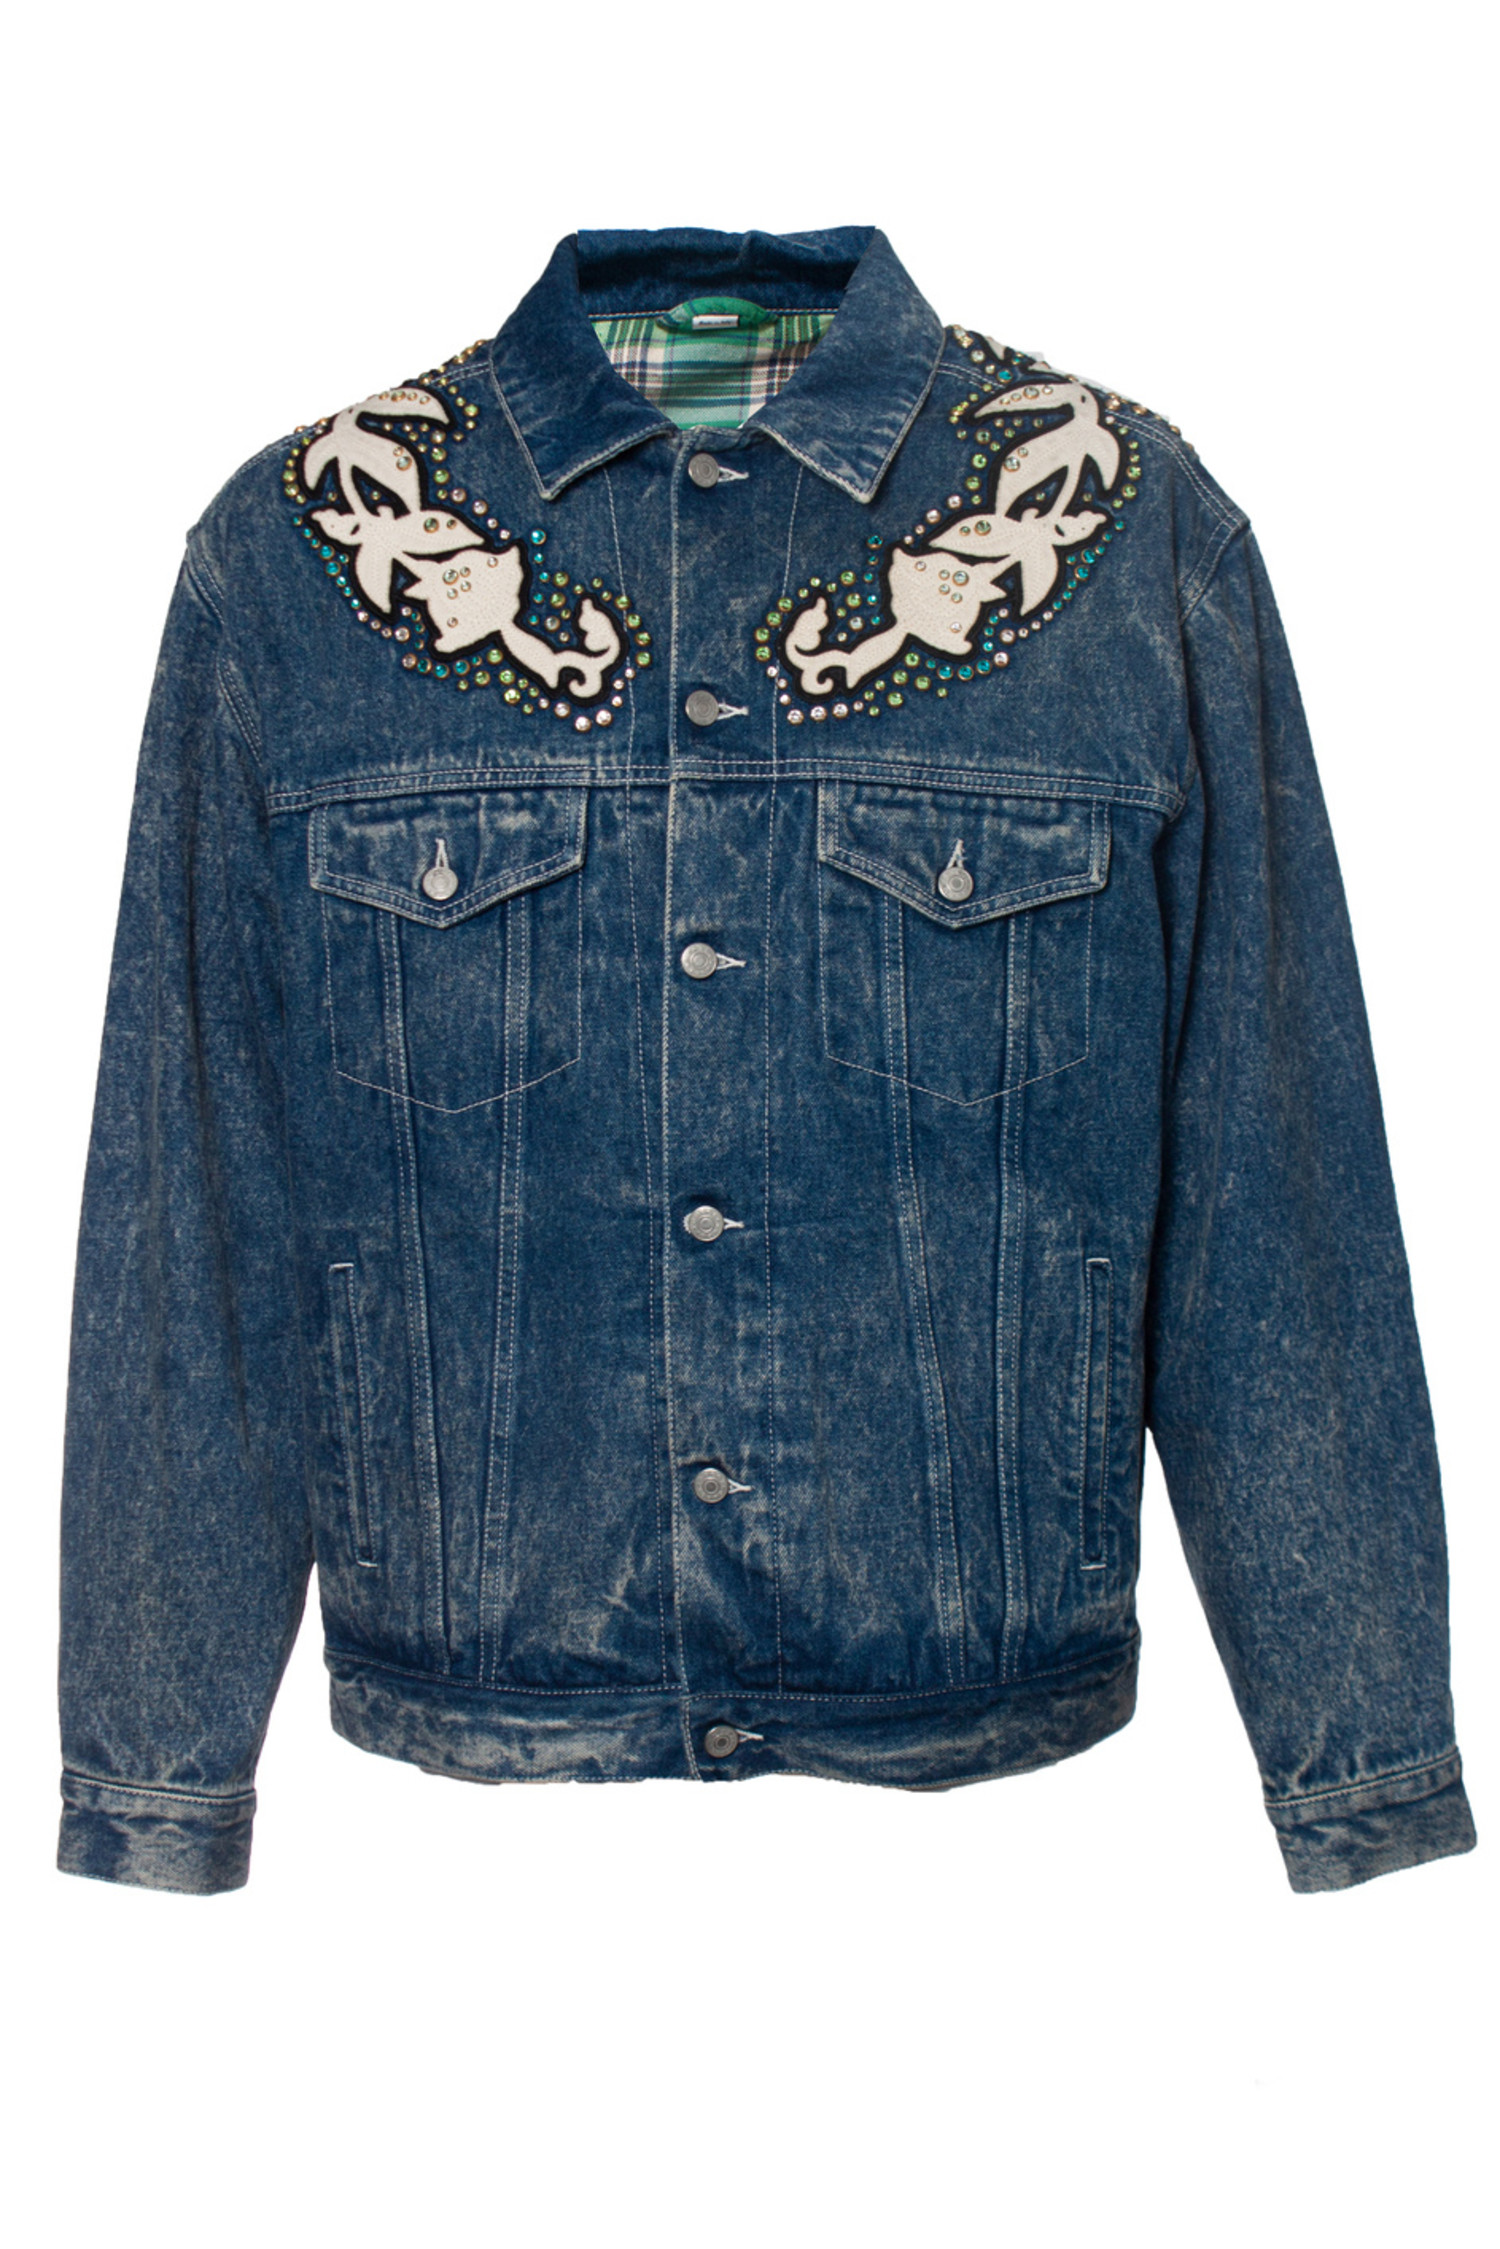 Gucci Eco-washed Organic Gg Denim Jacket - Blue | Editorialist